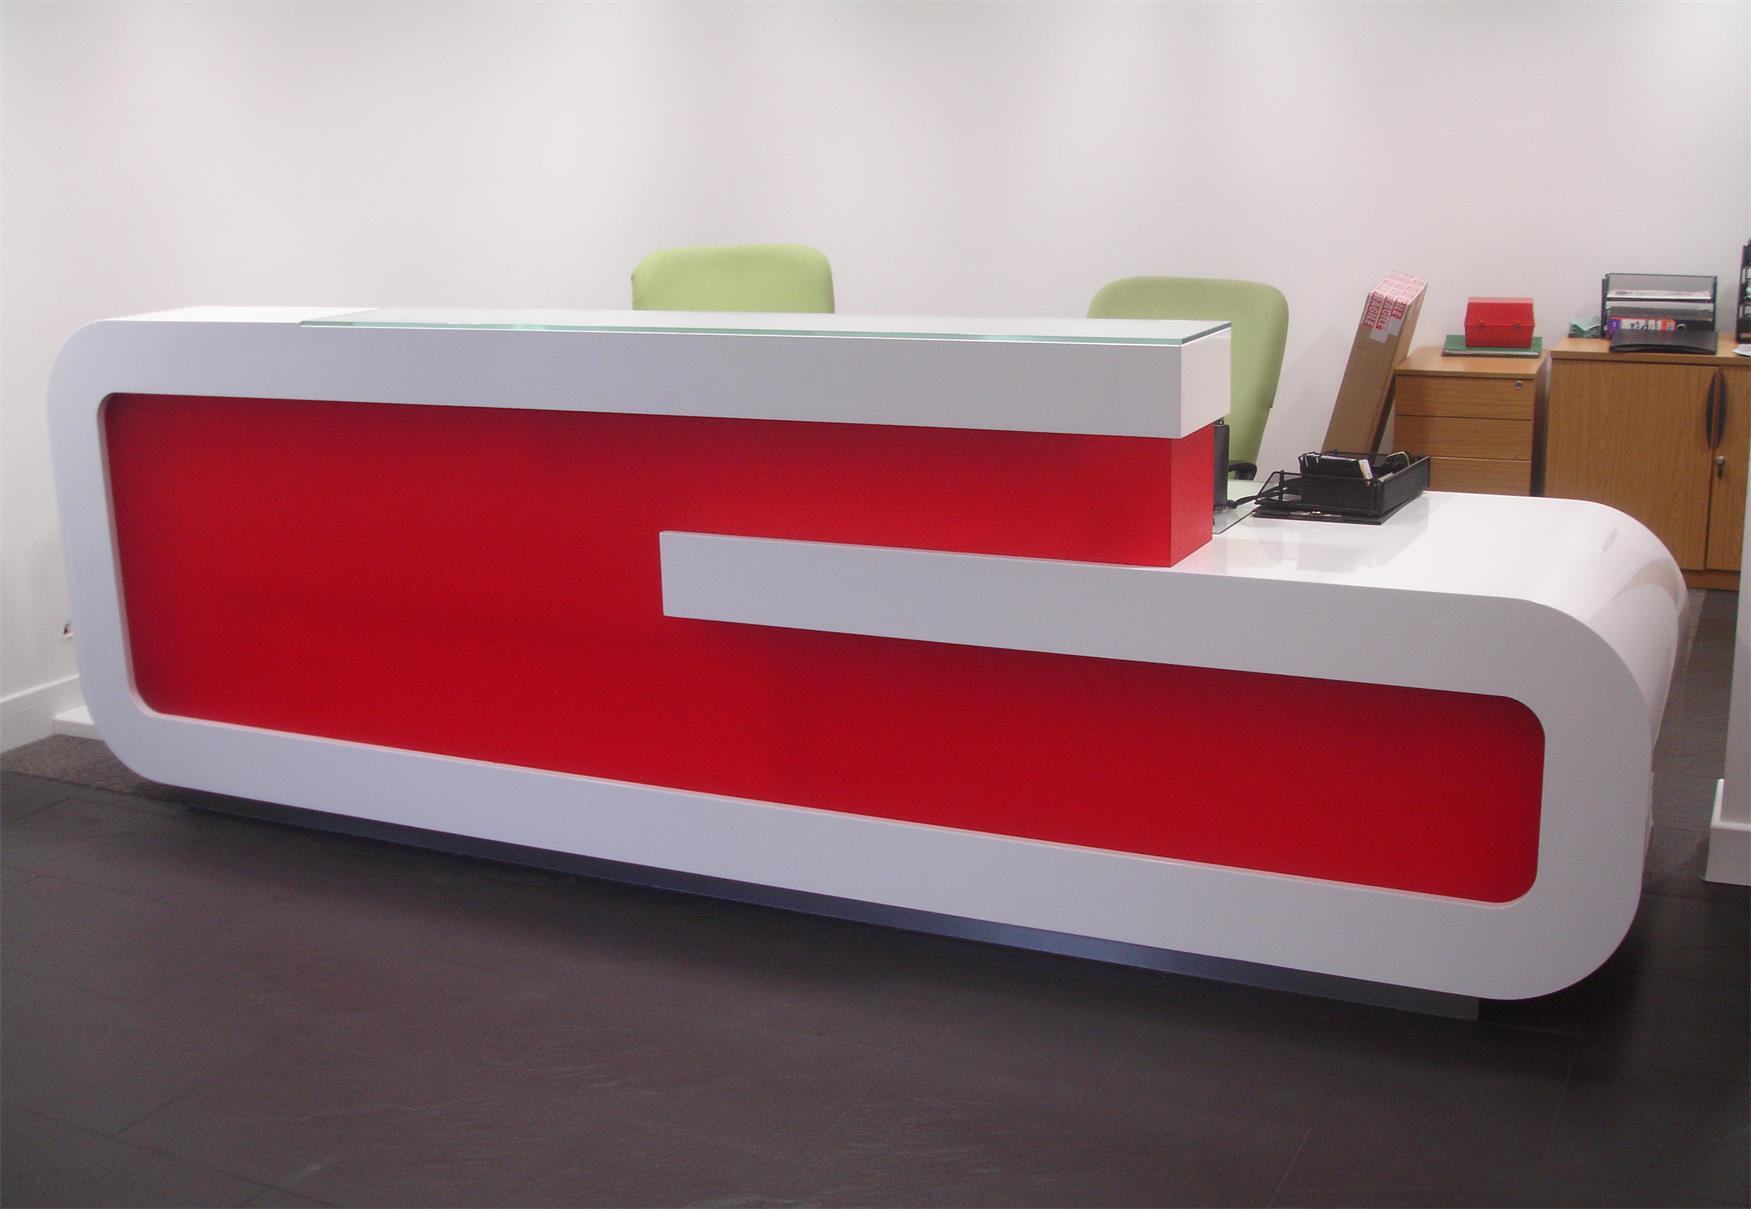 G Shape Custom Design Reception Desk Supplier Red White